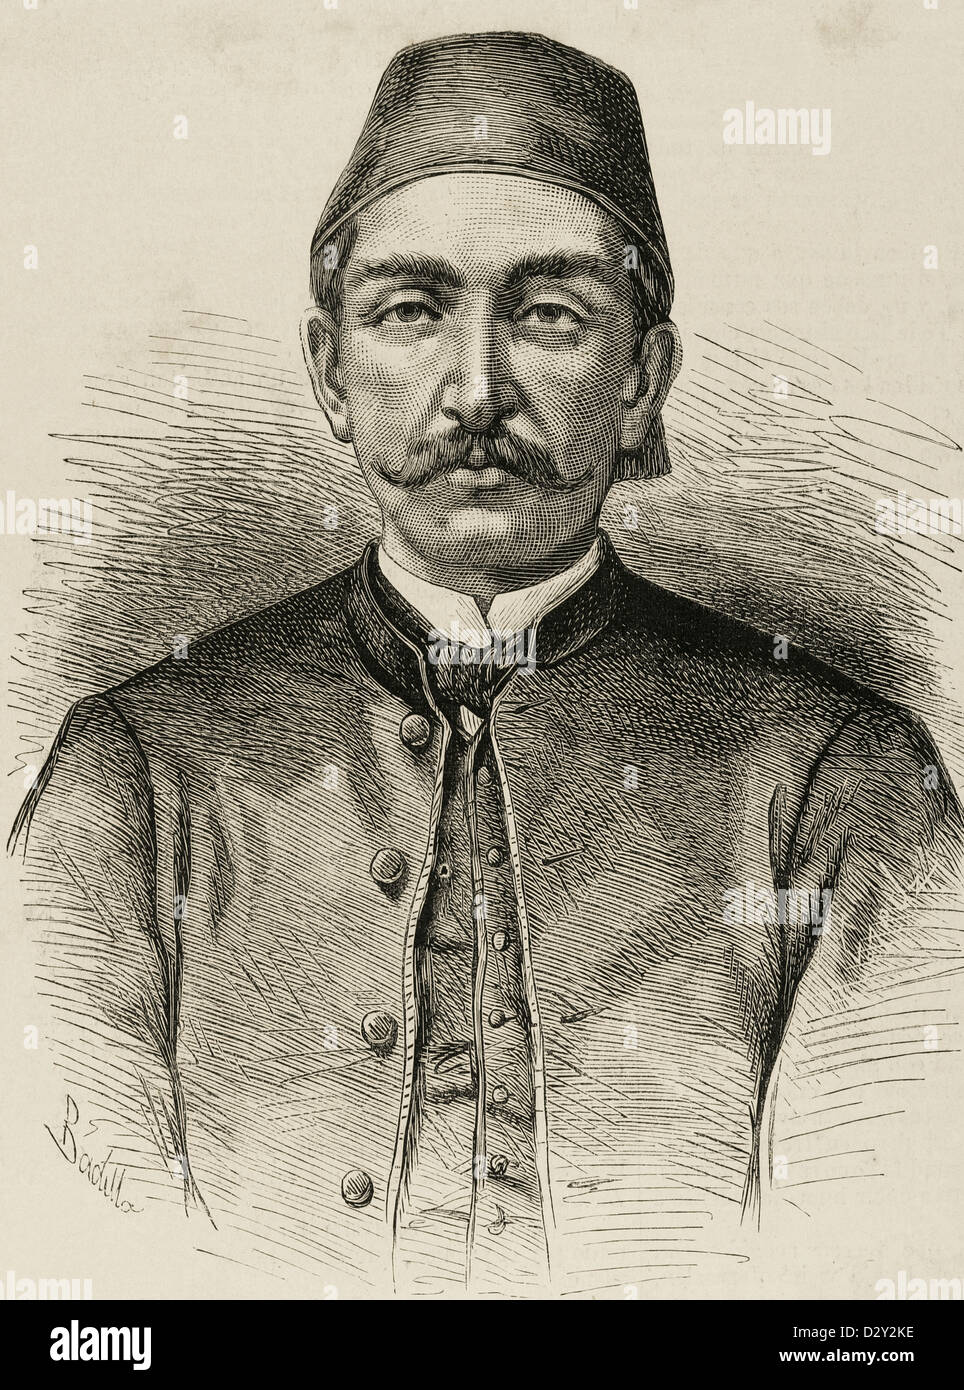 Abdul Hamid II (1842-1918). Xxxiv sultano dell'Impero Ottomano. Incisione di spagnoli e illustrazione americana, 1876. Foto Stock